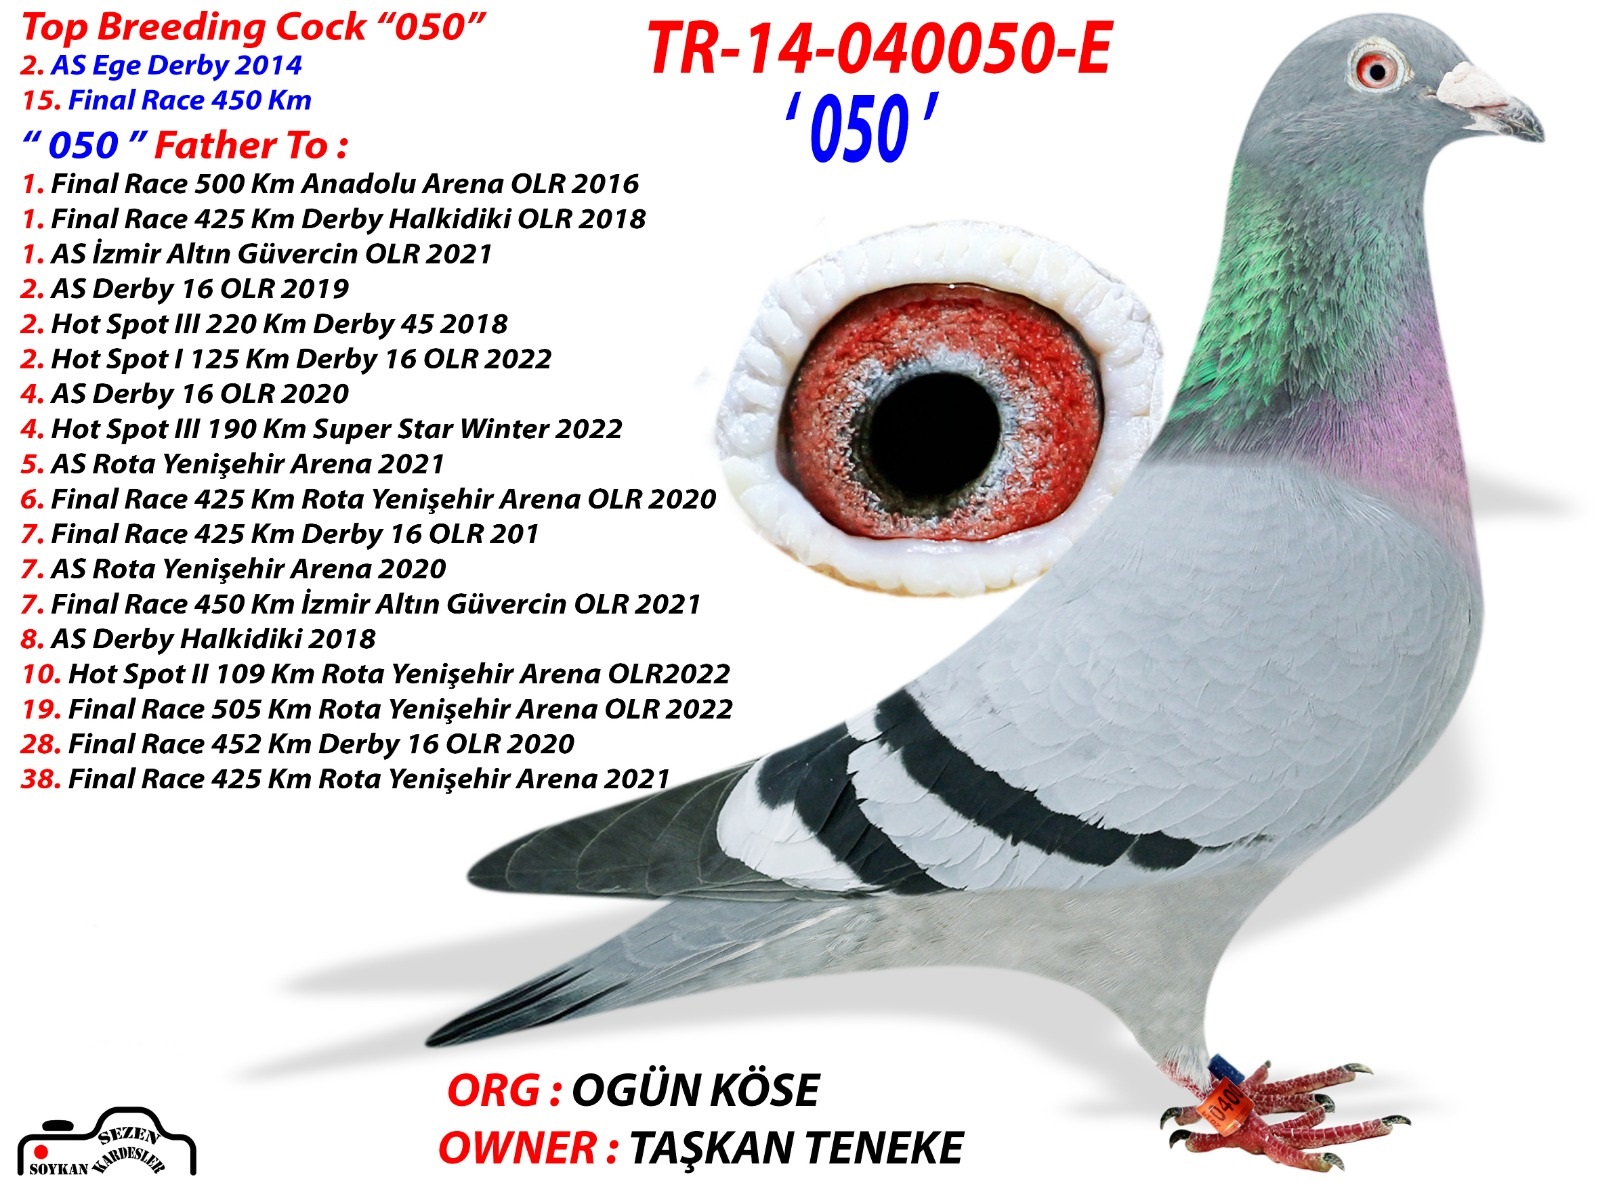 TR22-10-0793  TASKAN TENEKE  17. FİNAL -  7. AS